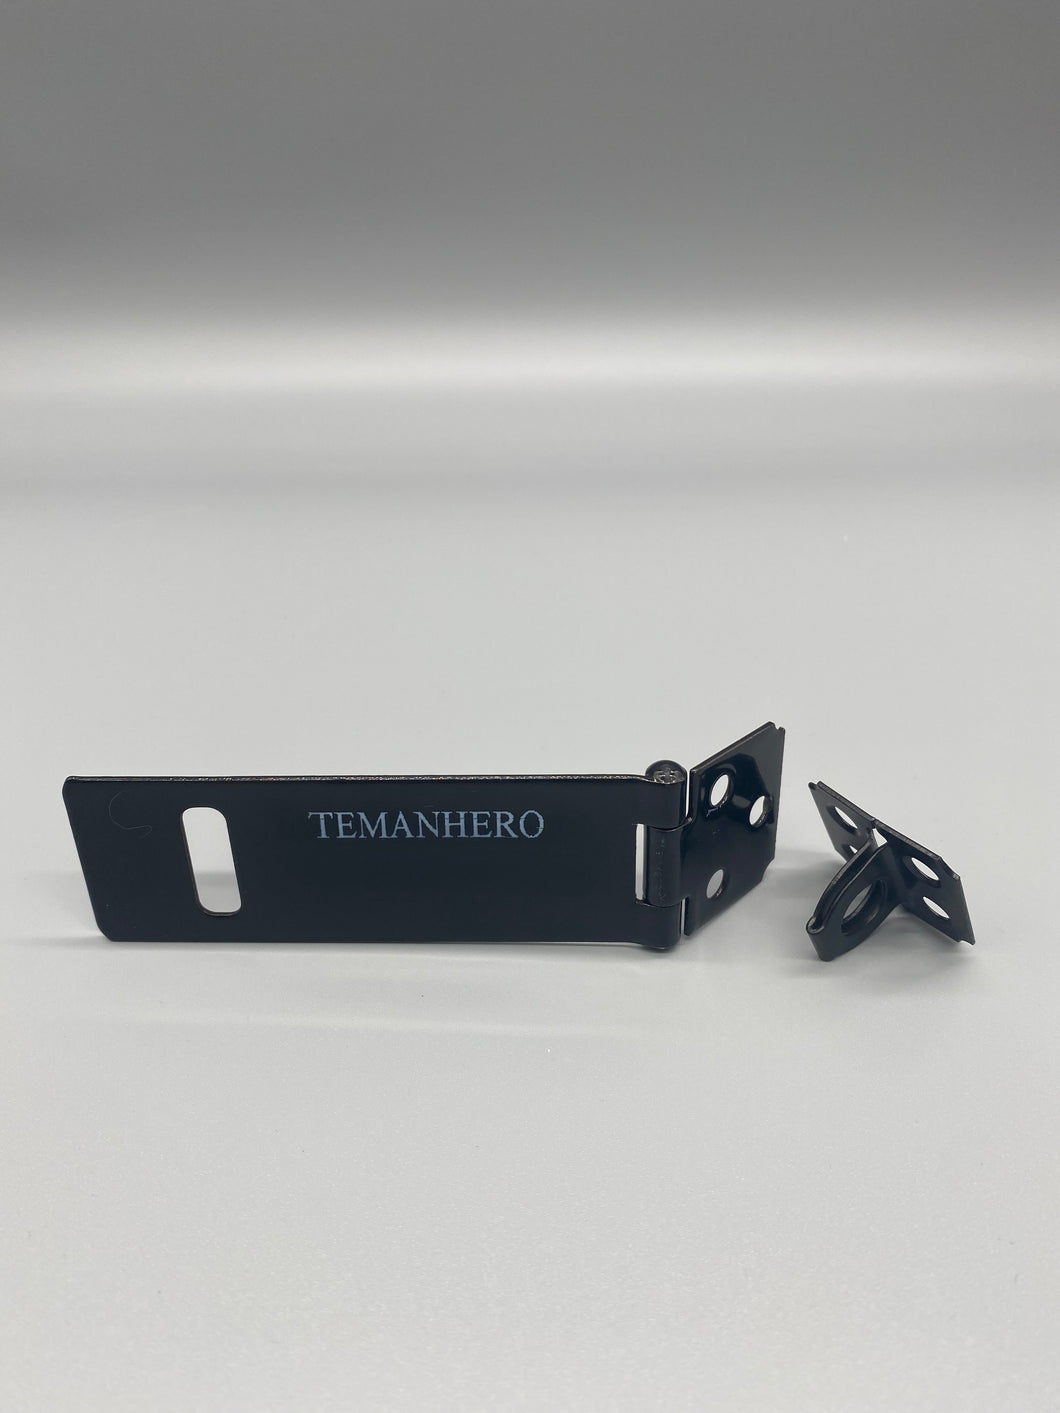 TEMANHERO Fittings of metal for furniture,Metal door fastener, household stainless steel door buckle, with rotary padlock eye base.